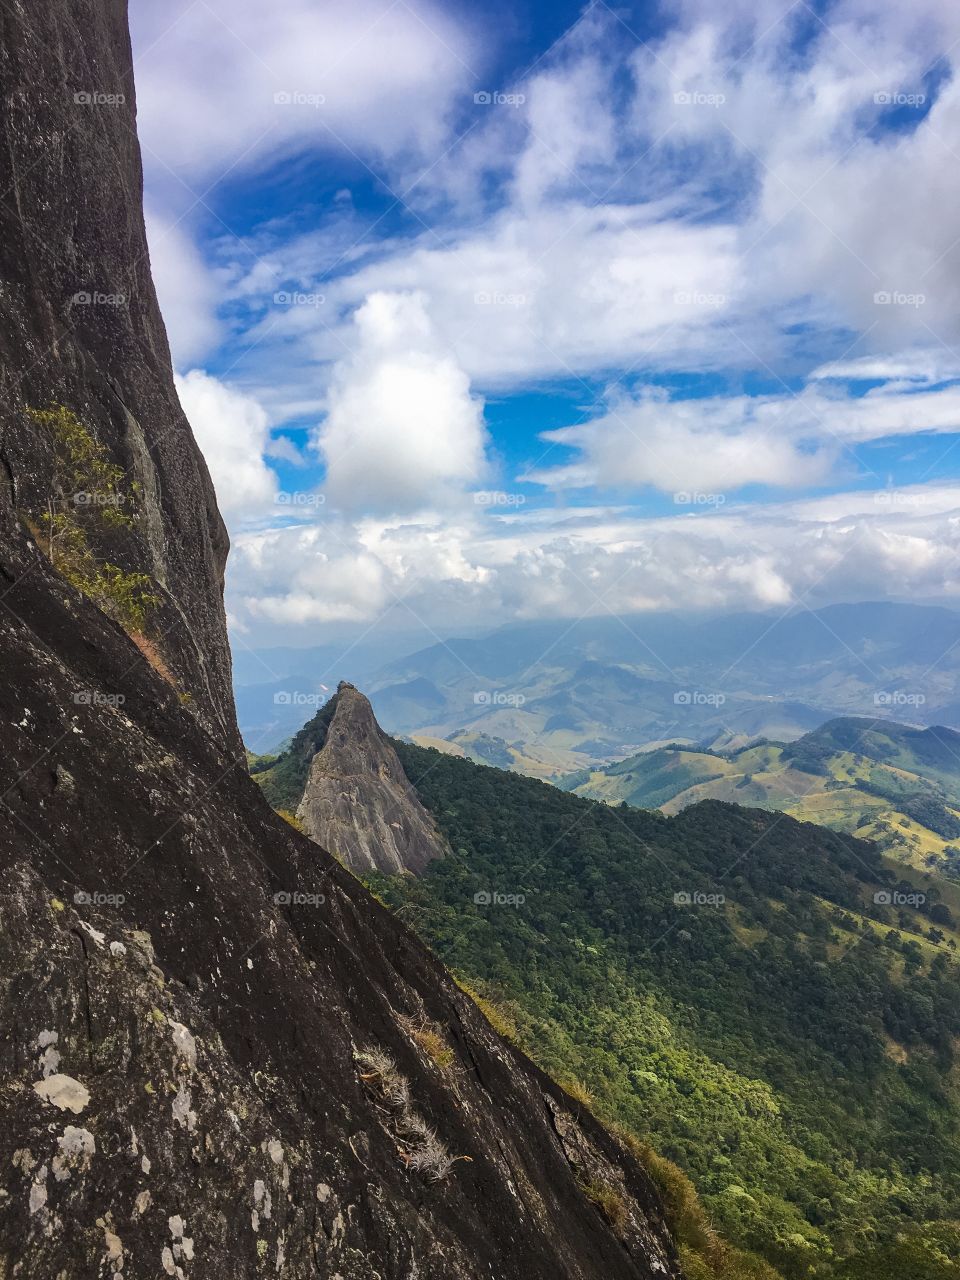 Mountain - Baú's rock, Sãi Bento do Sapucaí, SP, Brazil